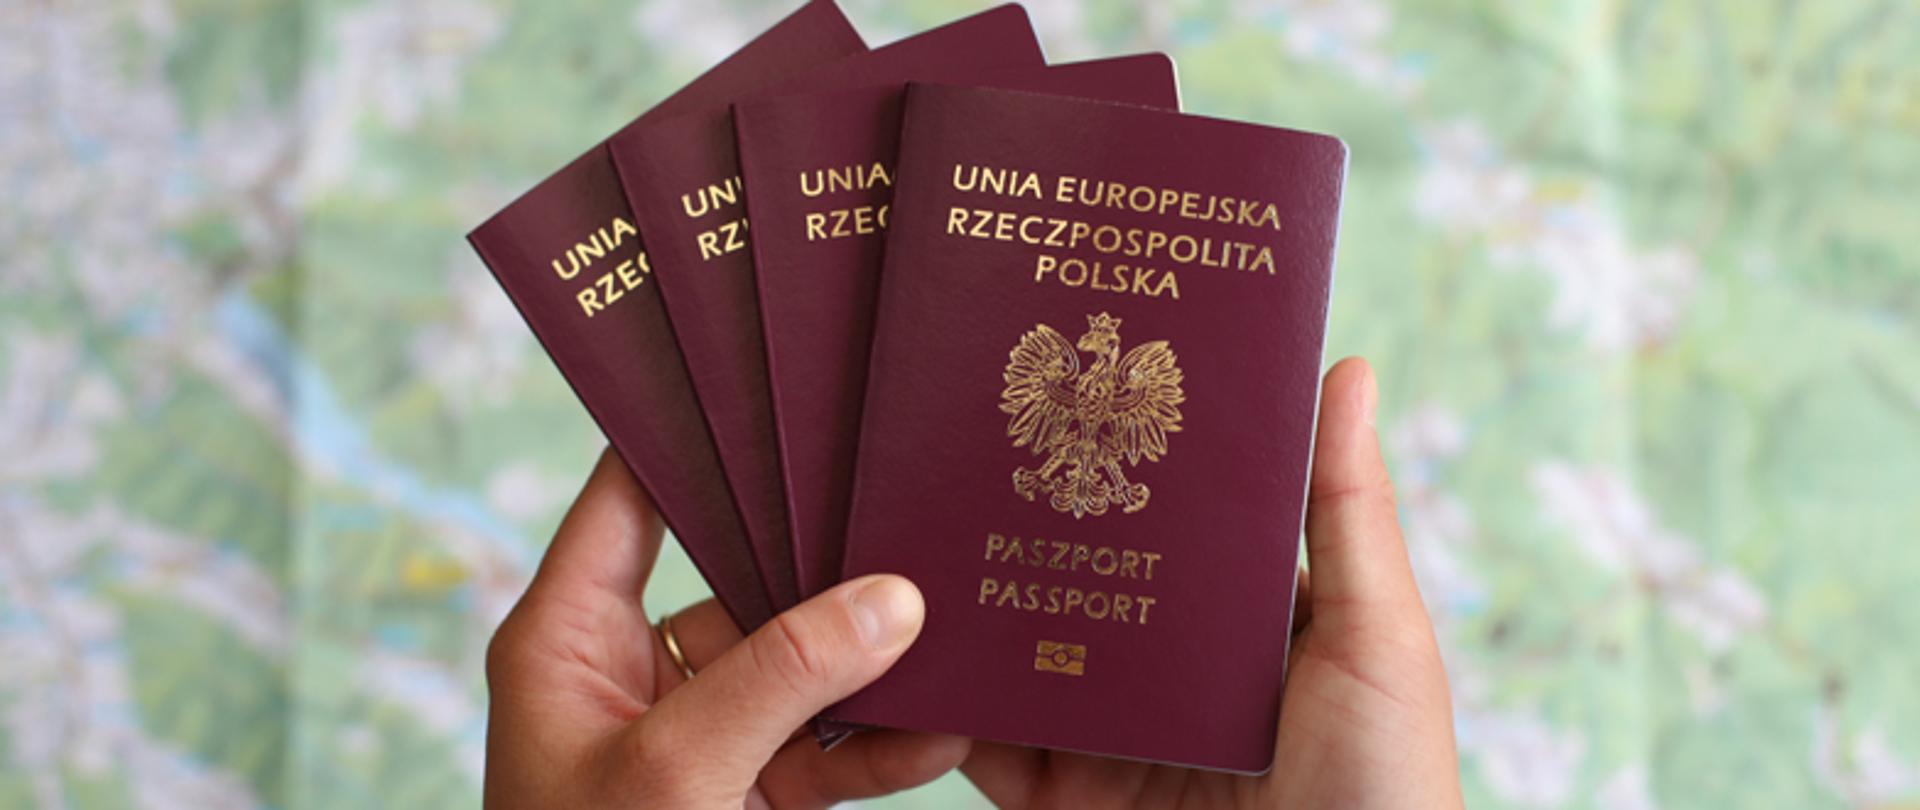 Получить польское гражданство через президента теперь намного легче